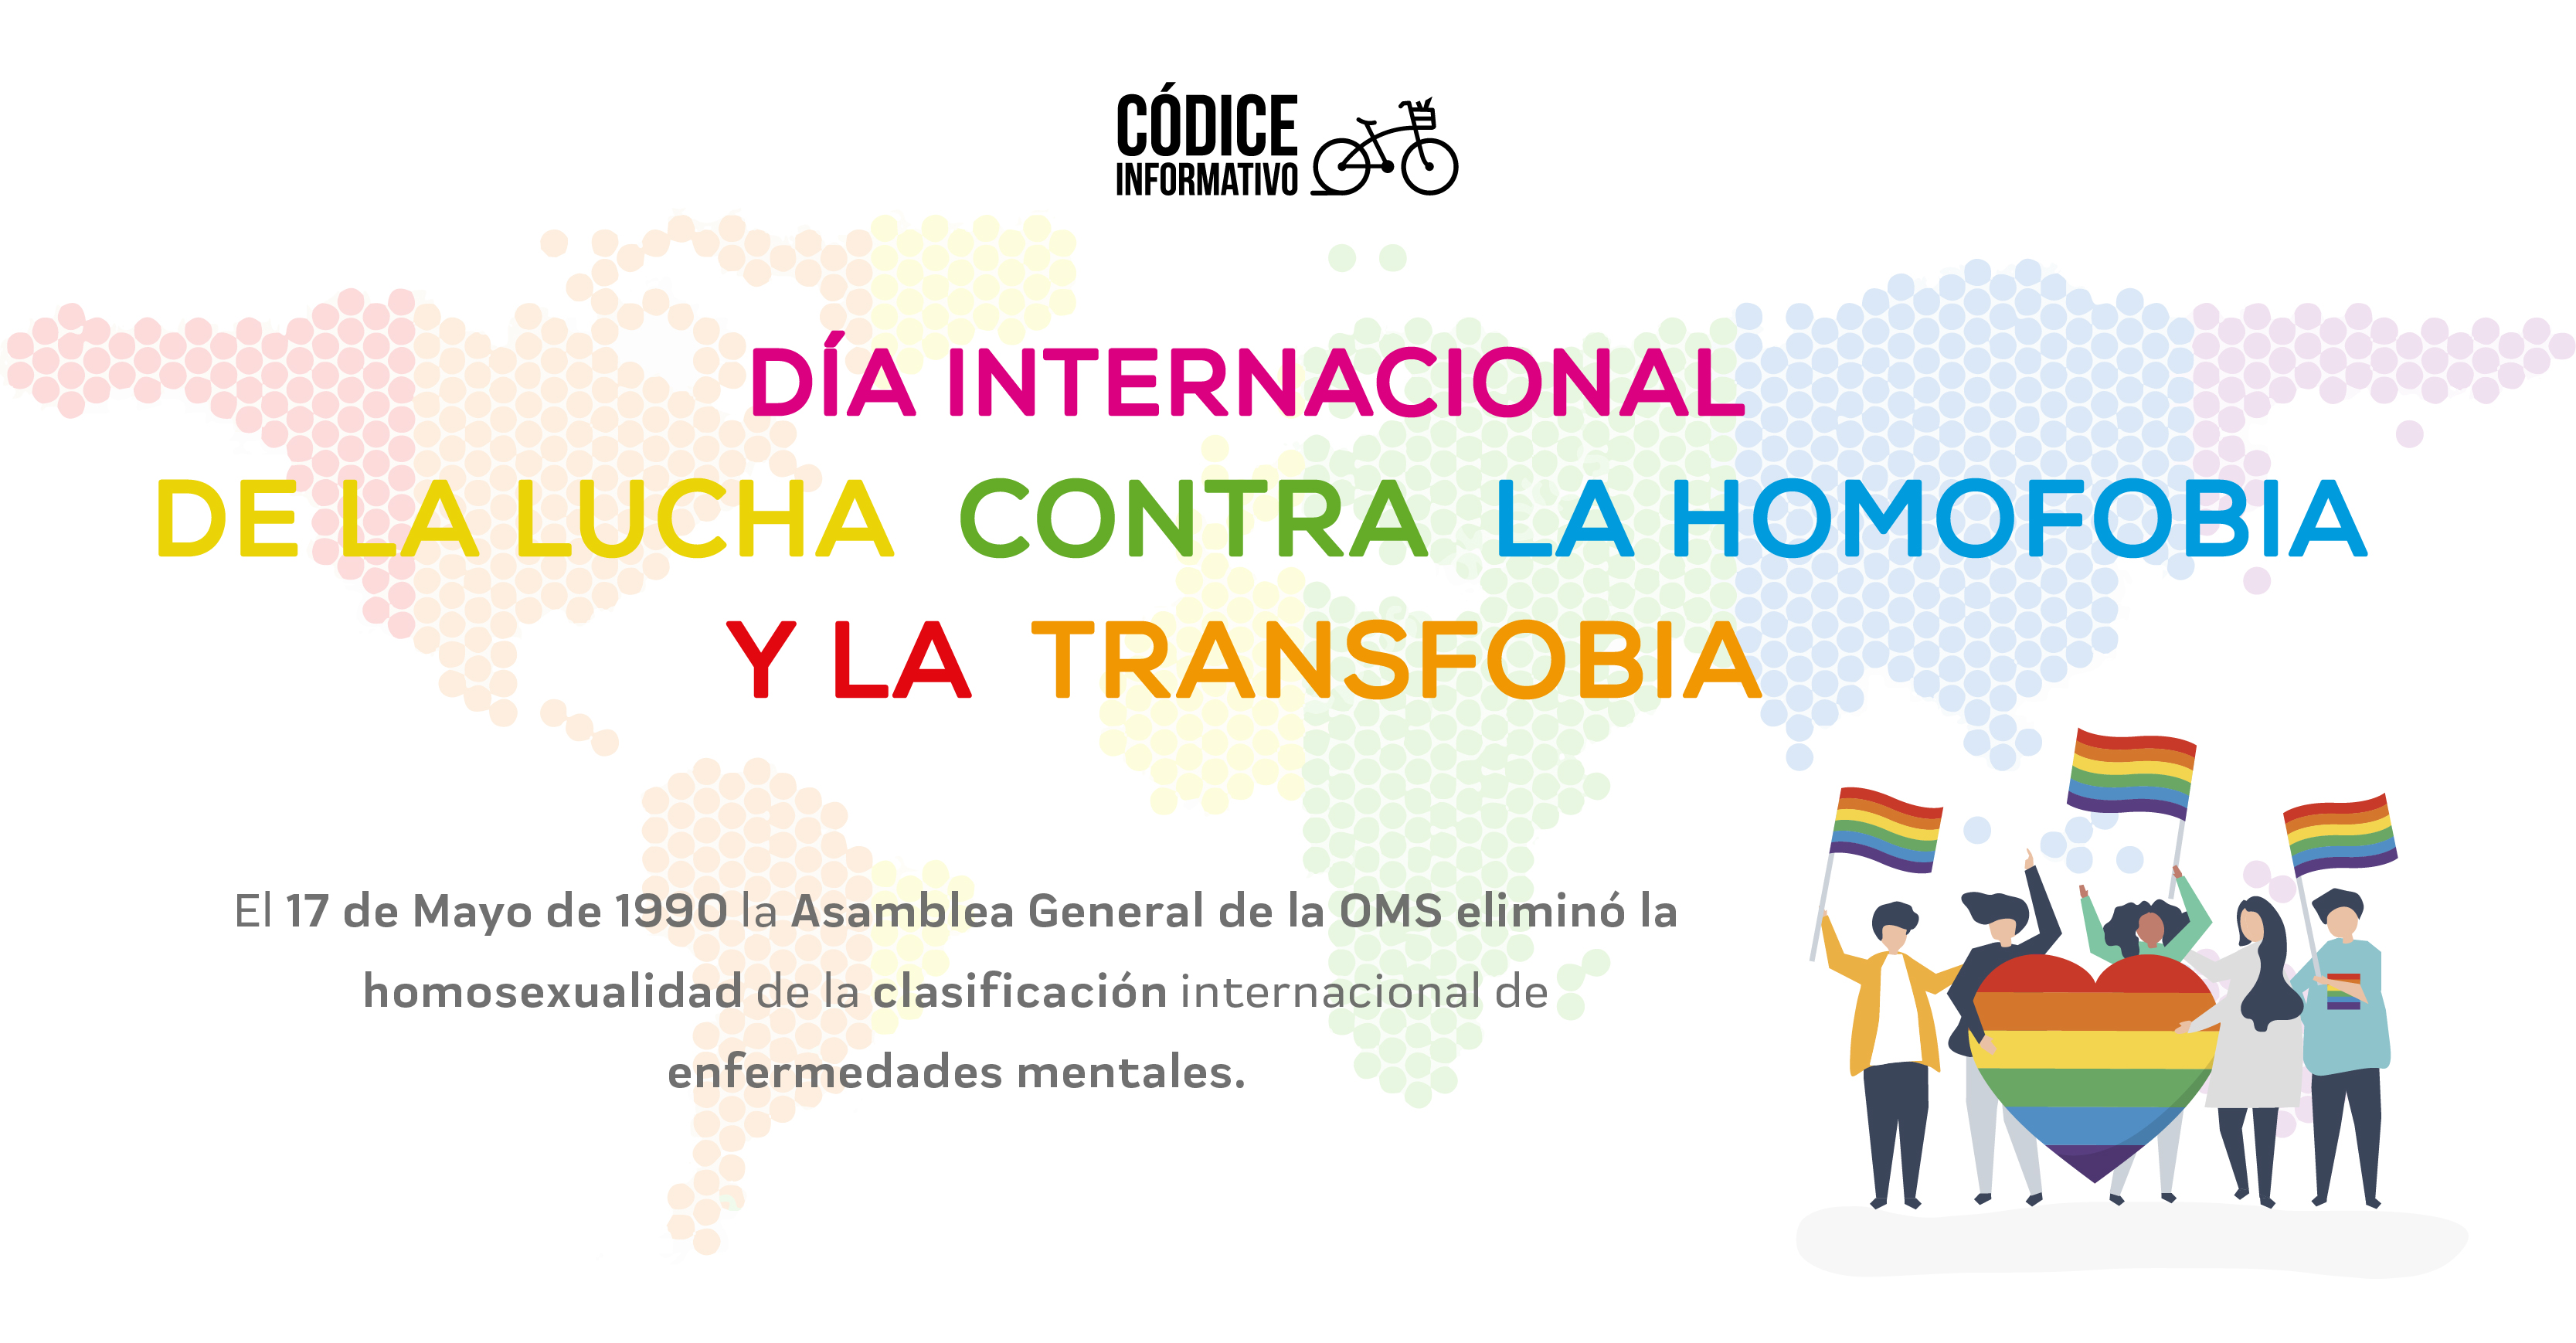  Día internacional de la lucha contra la homofobia y la transfobia.